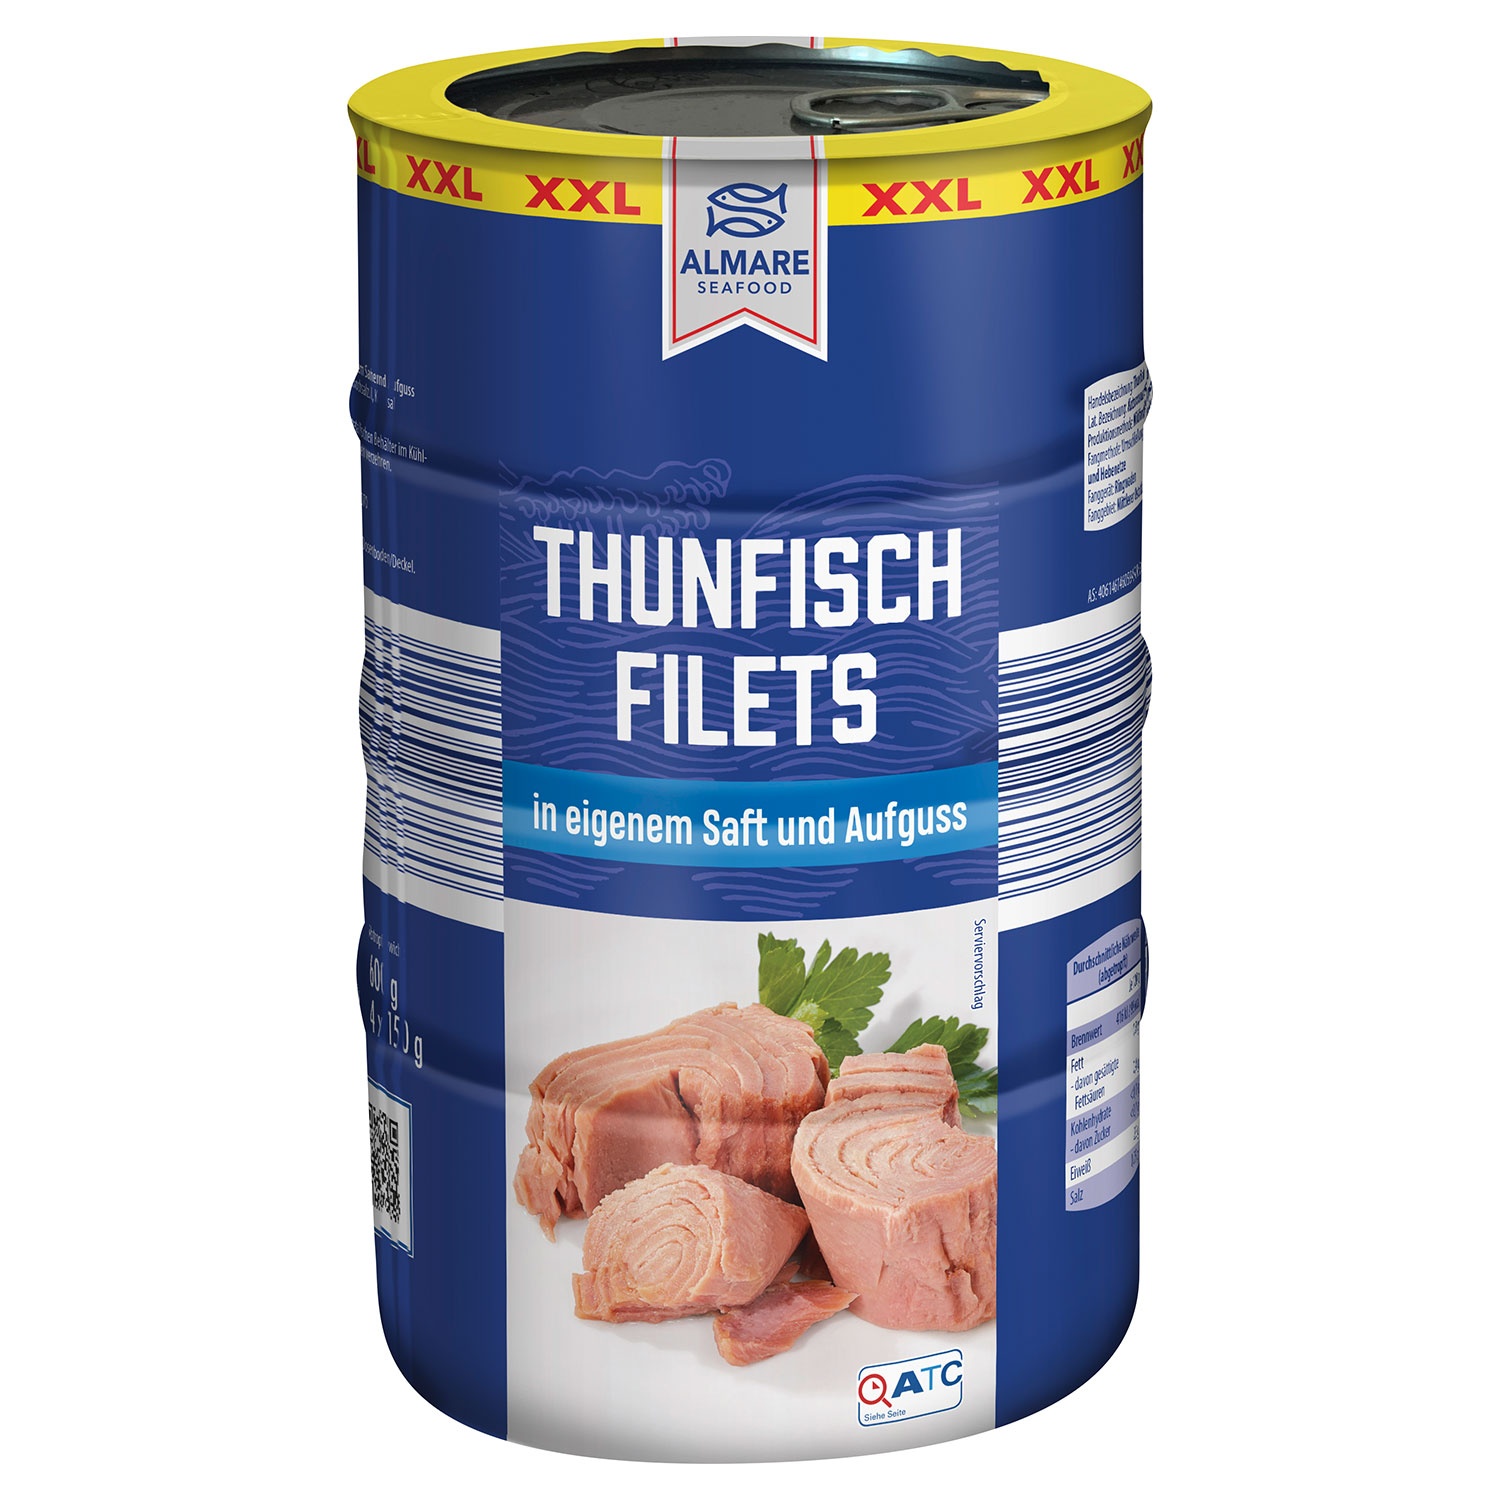 ALMARE Thunfischfilets 780 g, 4er-Packung